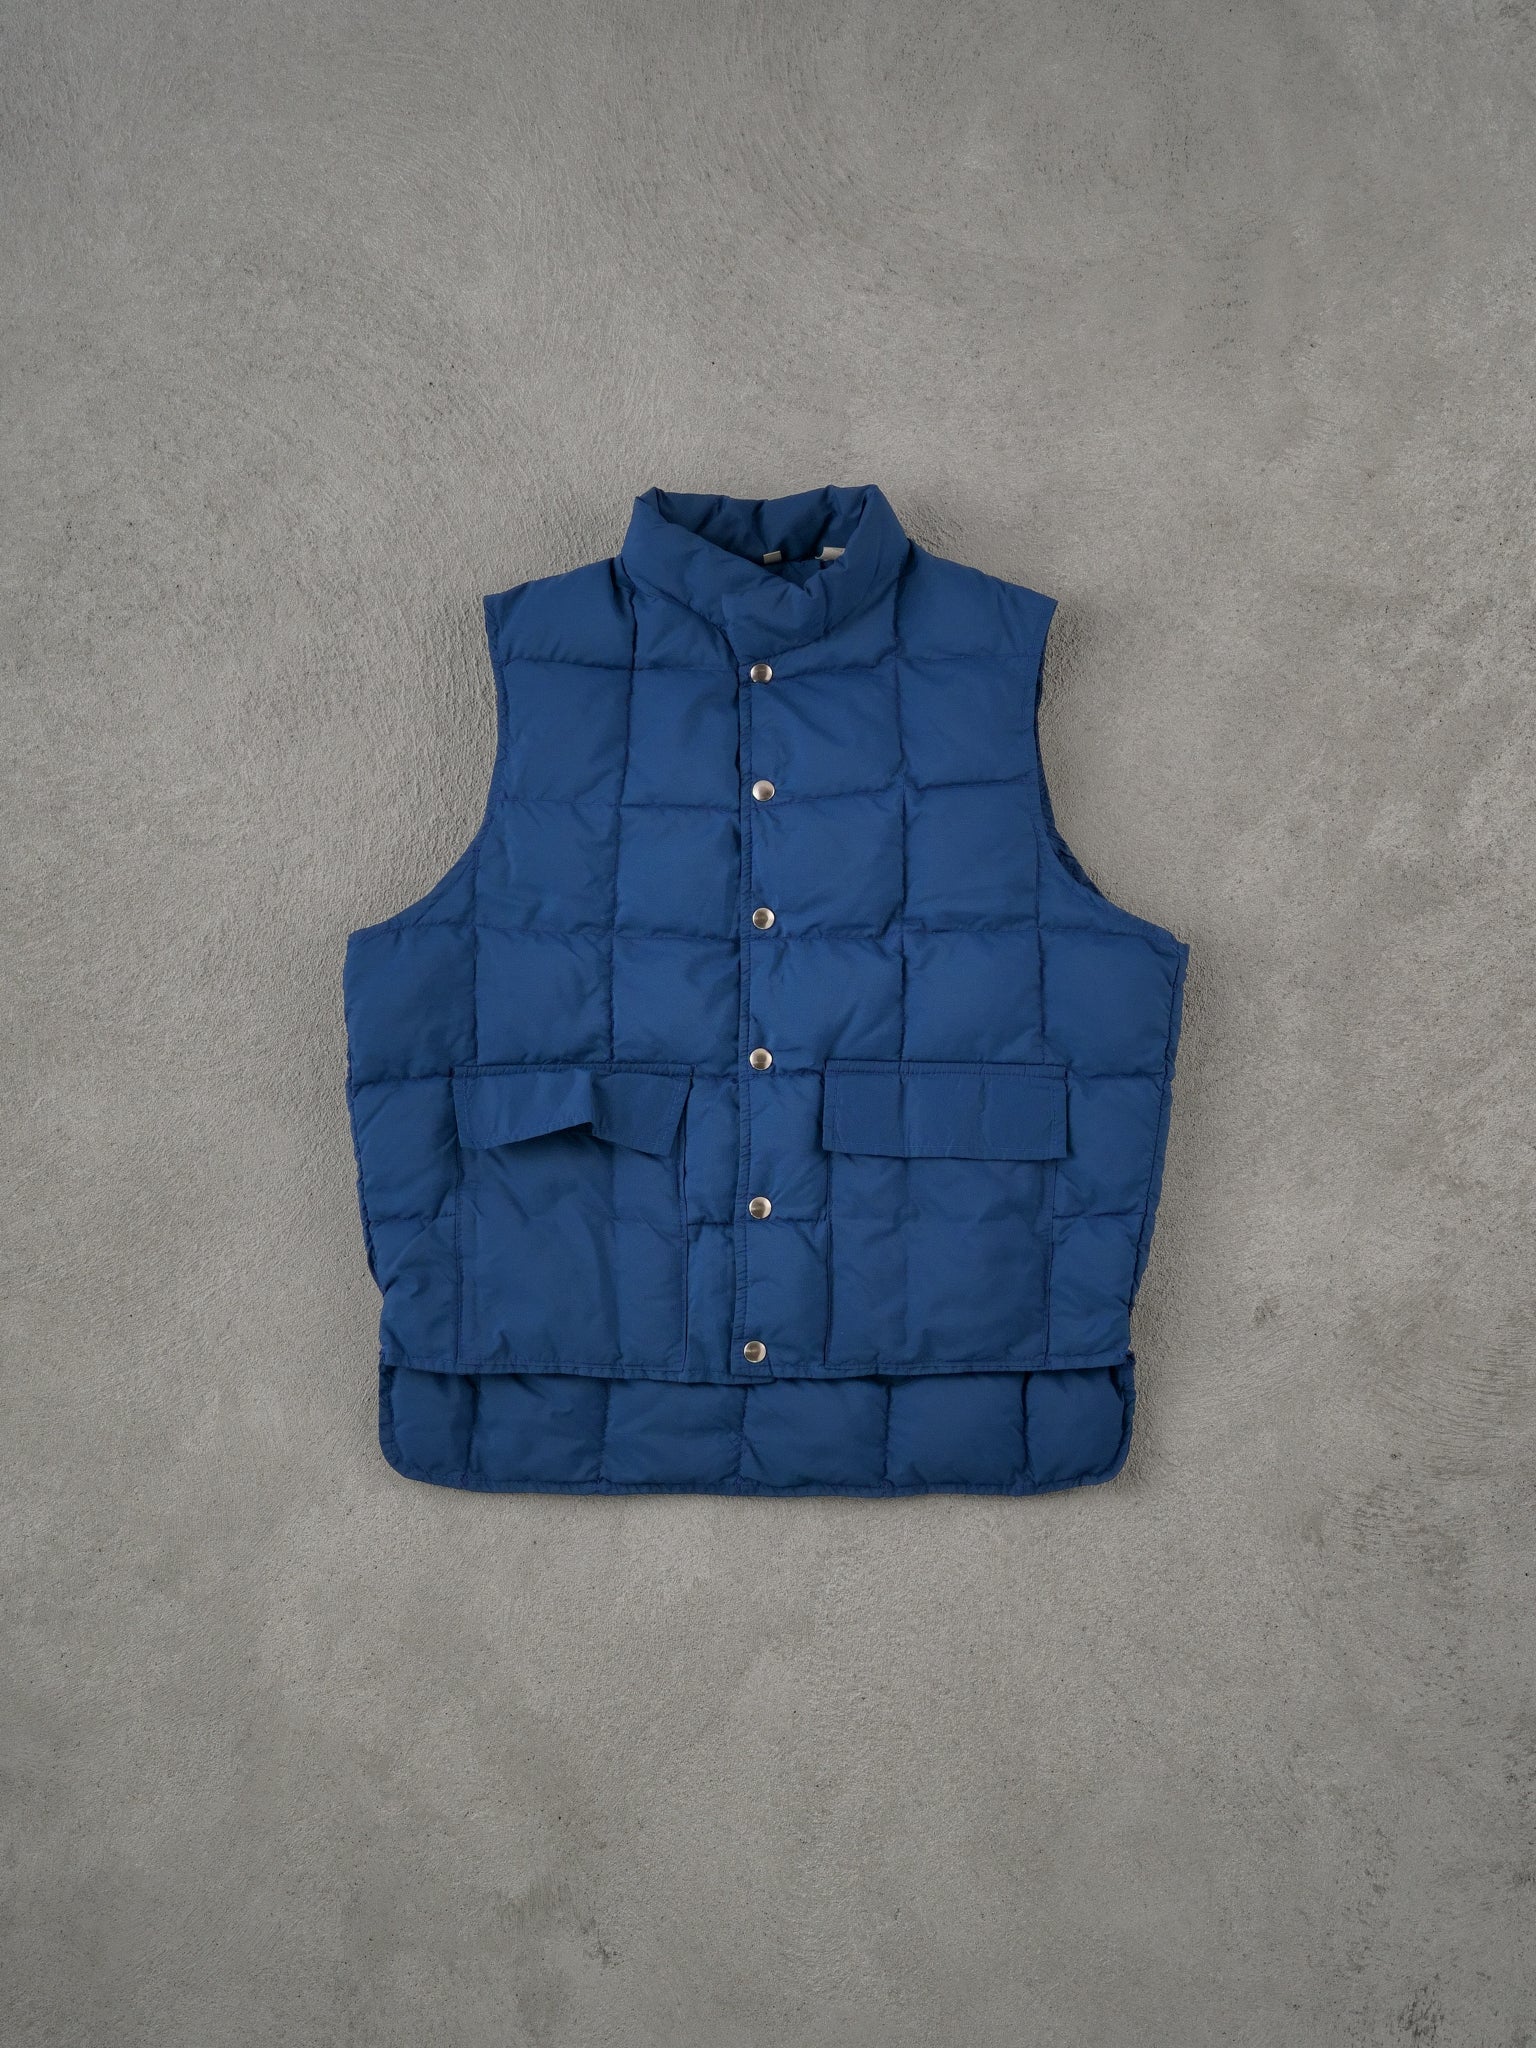 VIntage 90s Blue JC Penny Duck Down Puffer Vest (M/L)